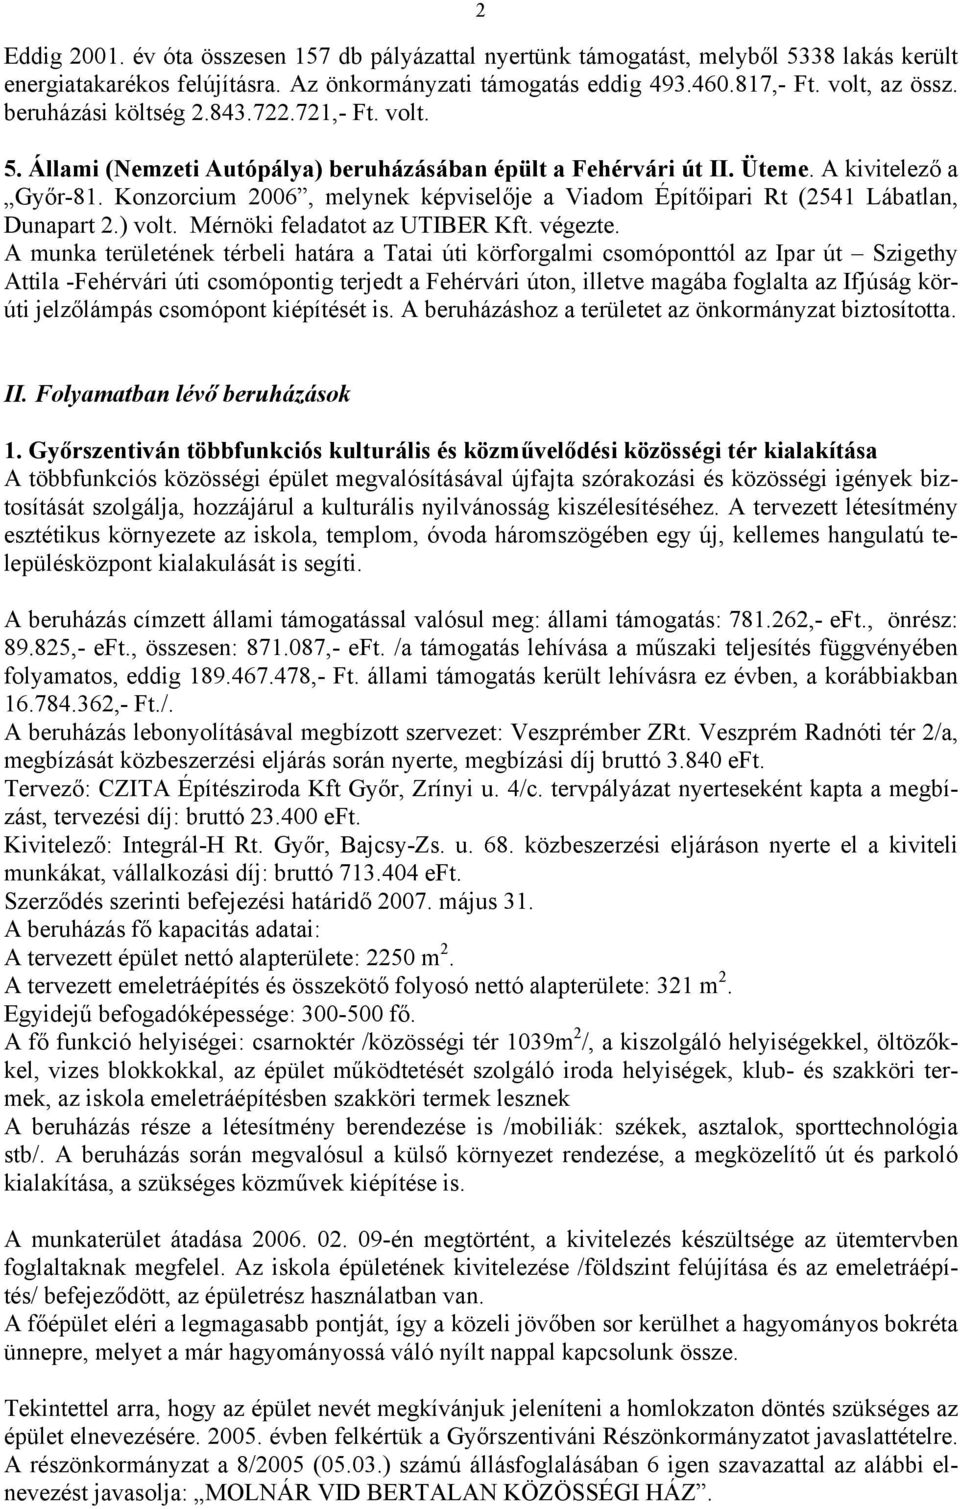 Konzorcium 2006, melynek képviselője a Viadom Építőipari Rt (2541 Lábatlan, Dunapart 2.) volt. Mérnöki feladatot az UTIBER Kft. végezte.